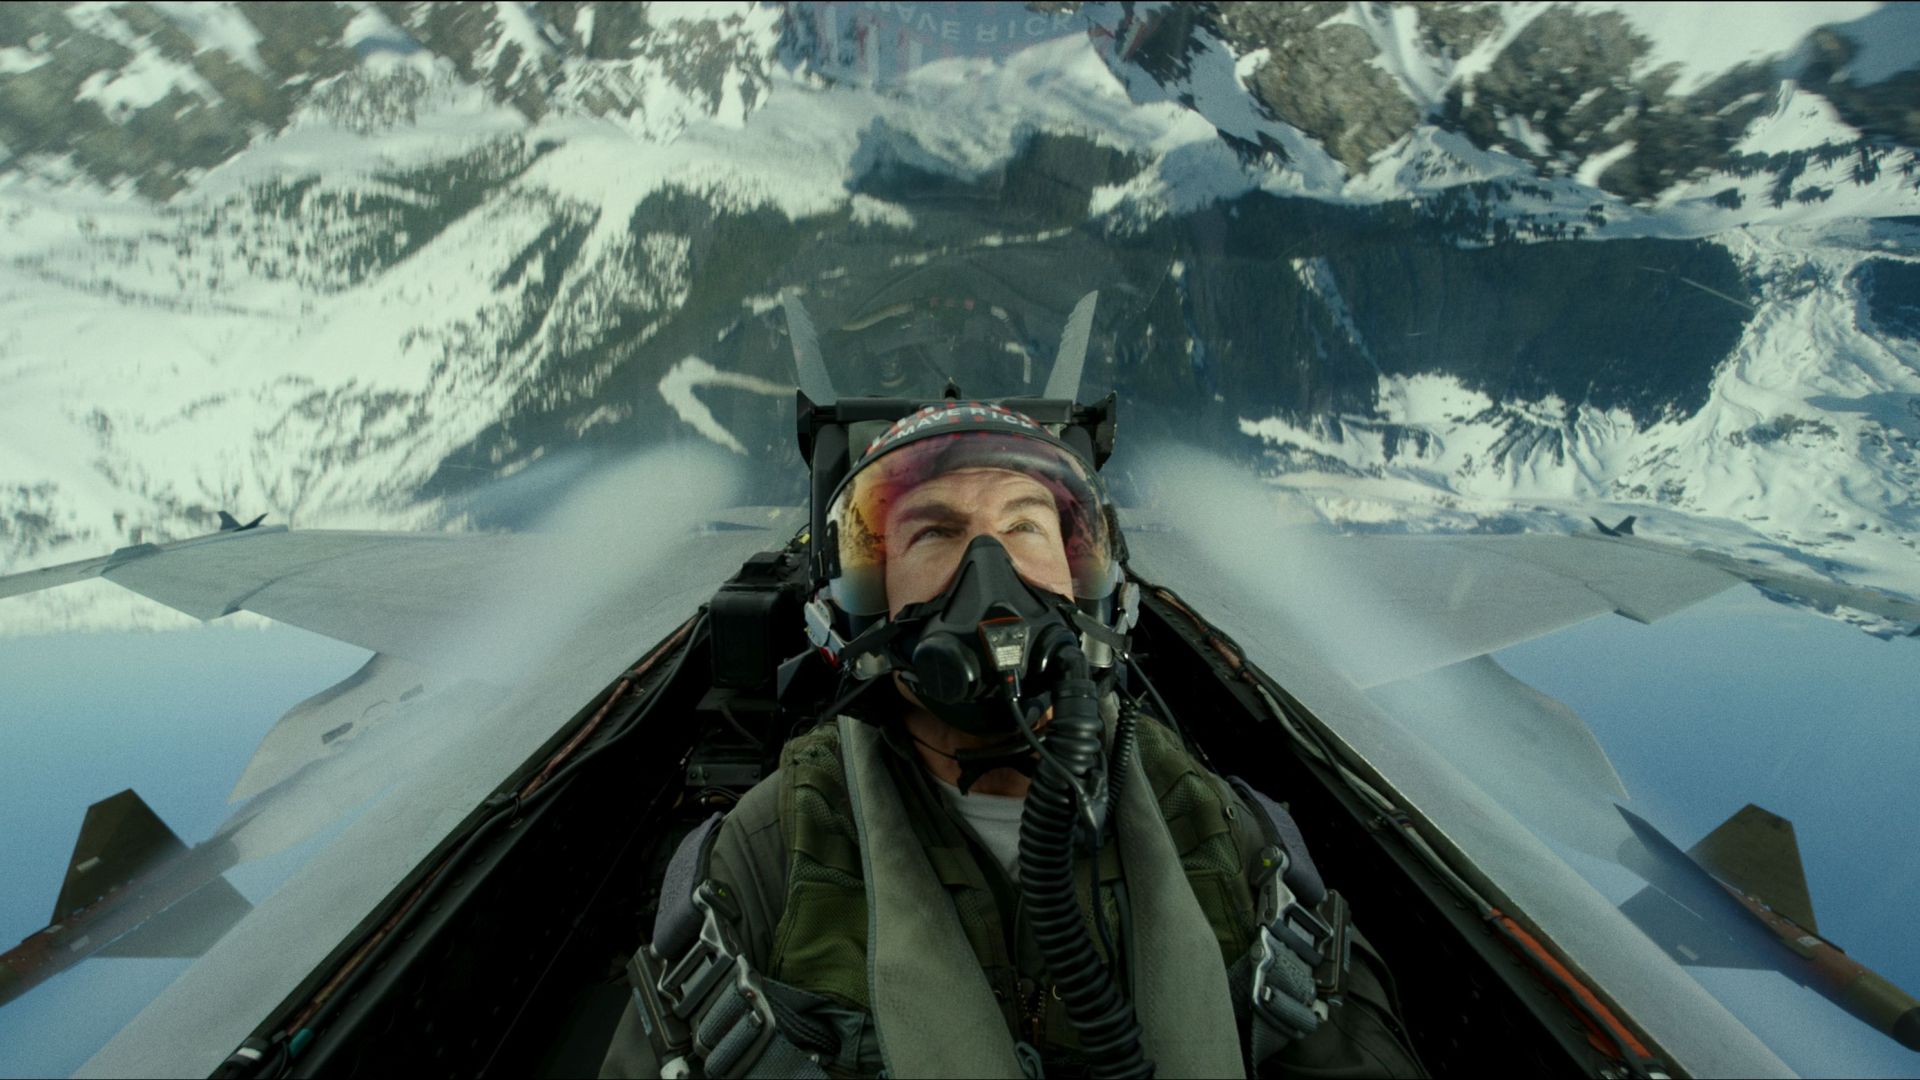 В новия "Топ гън": Влизаме в битка, каквато жив пилот не познава